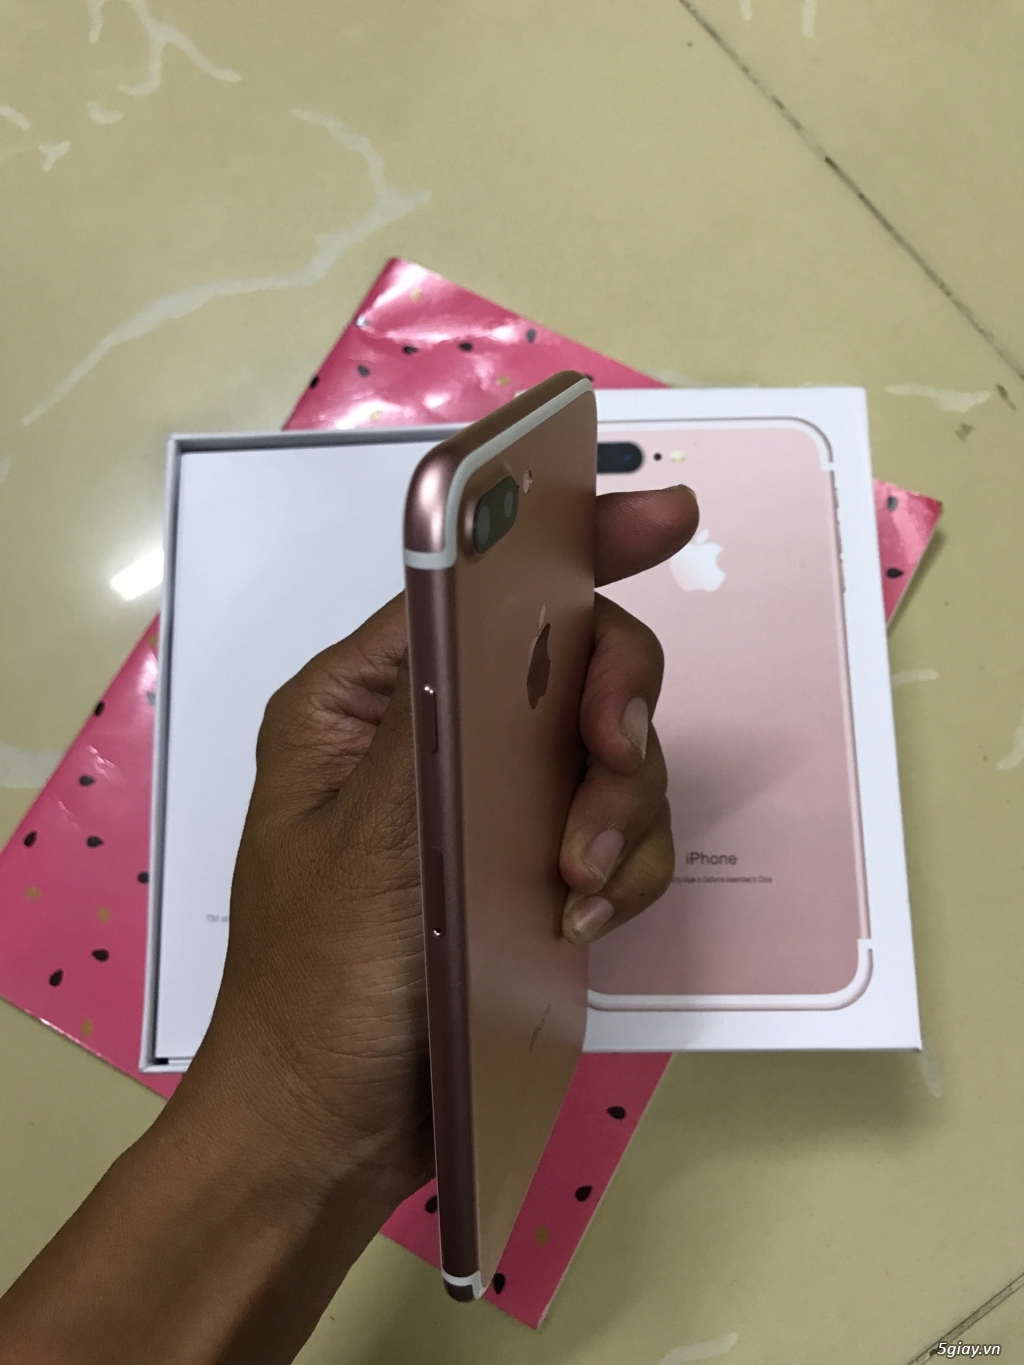 Bán iphone 7 plus vàng hồng 32gb 99.9% đẹp như mới nguyên zin - 4